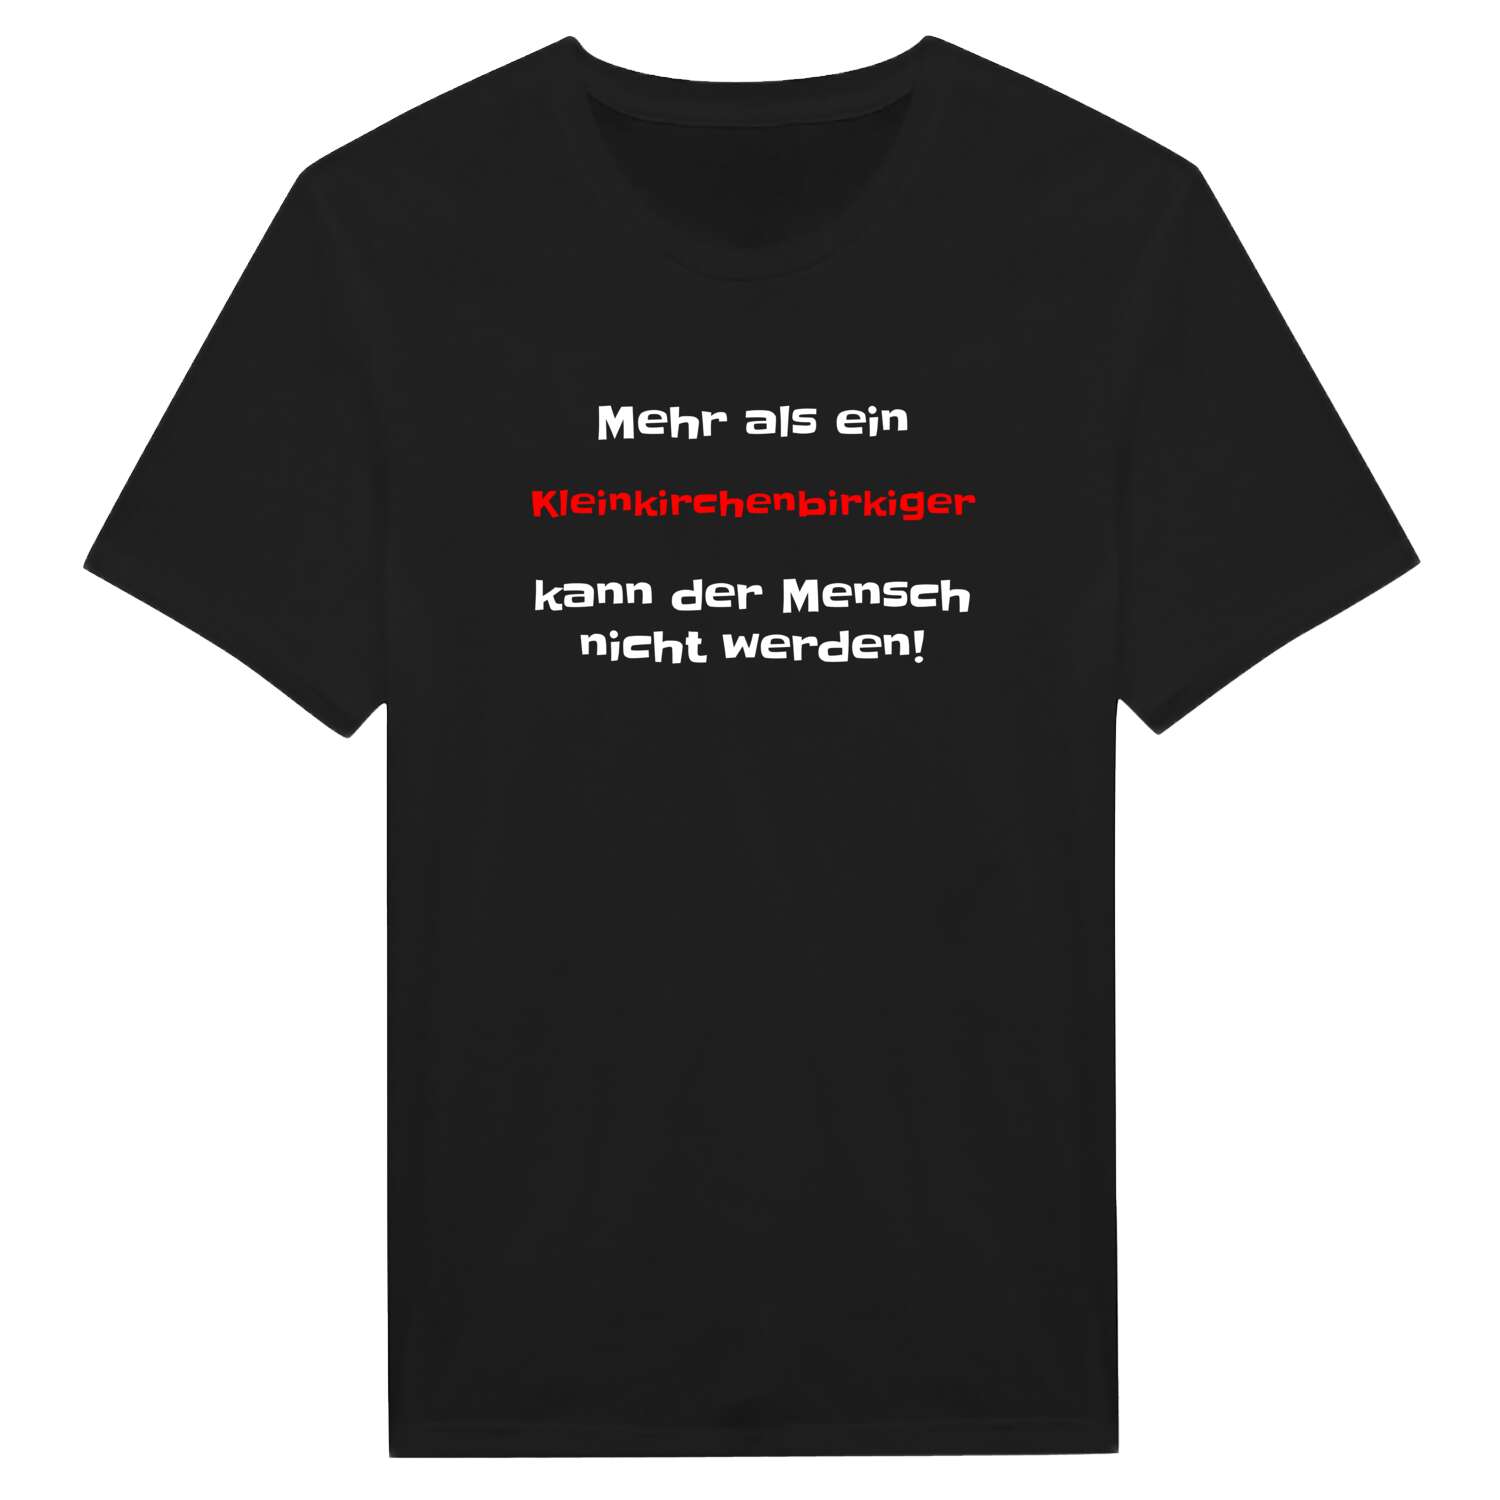 Kleinkirchenbirkig T-Shirt »Mehr als ein«